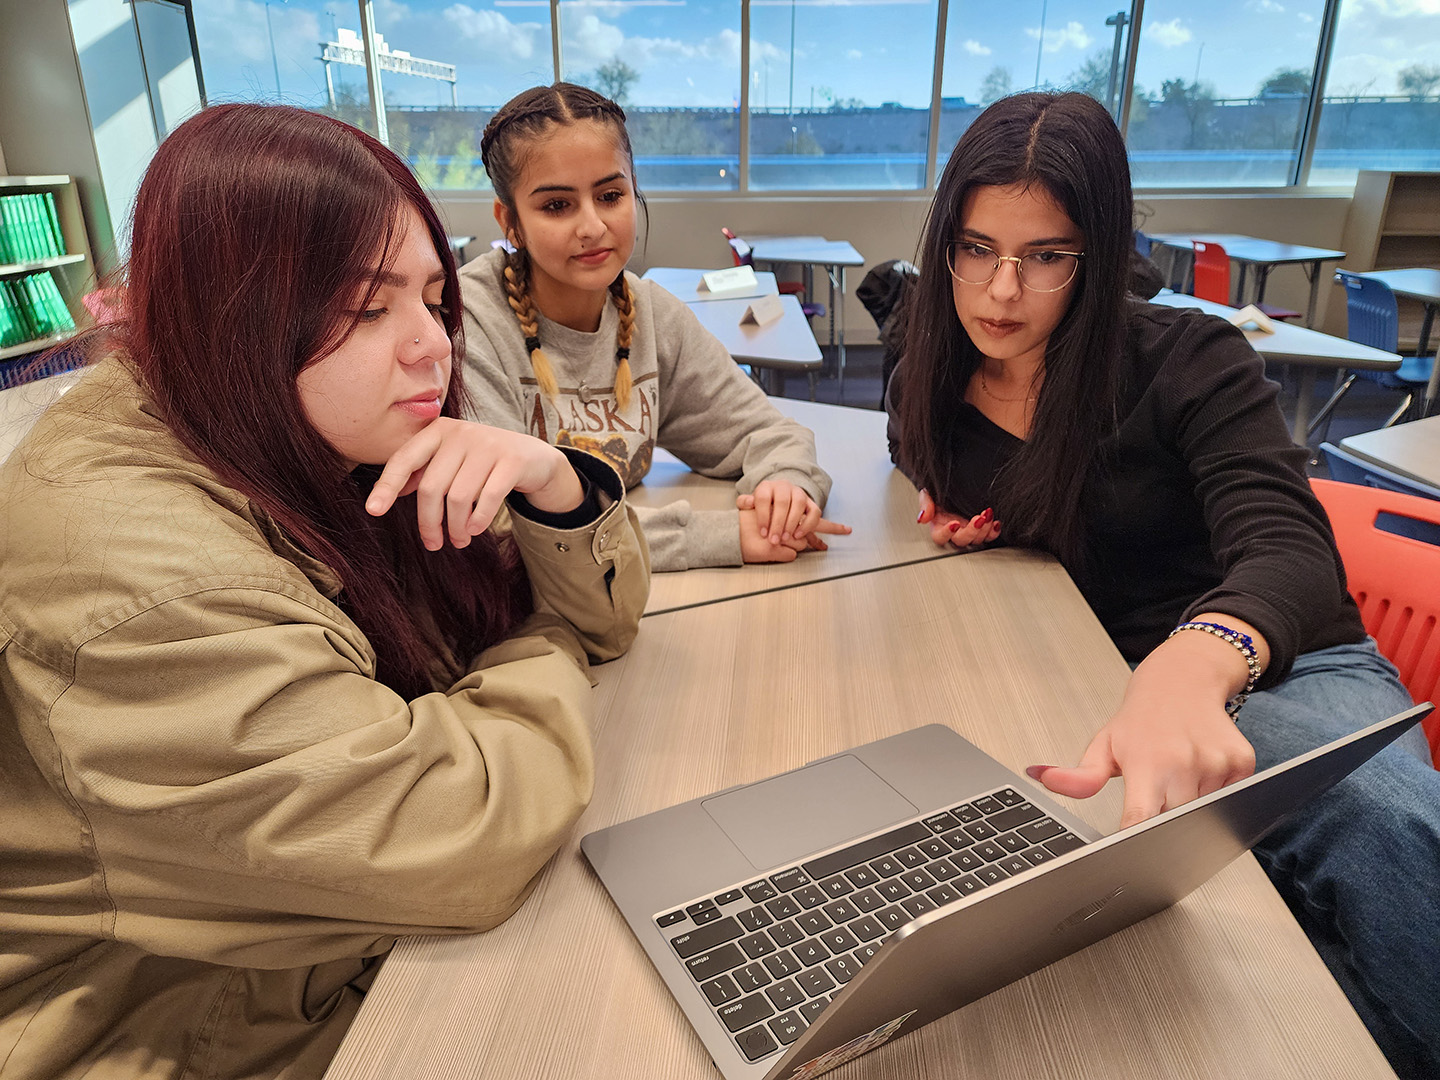 Students Looking at Computer